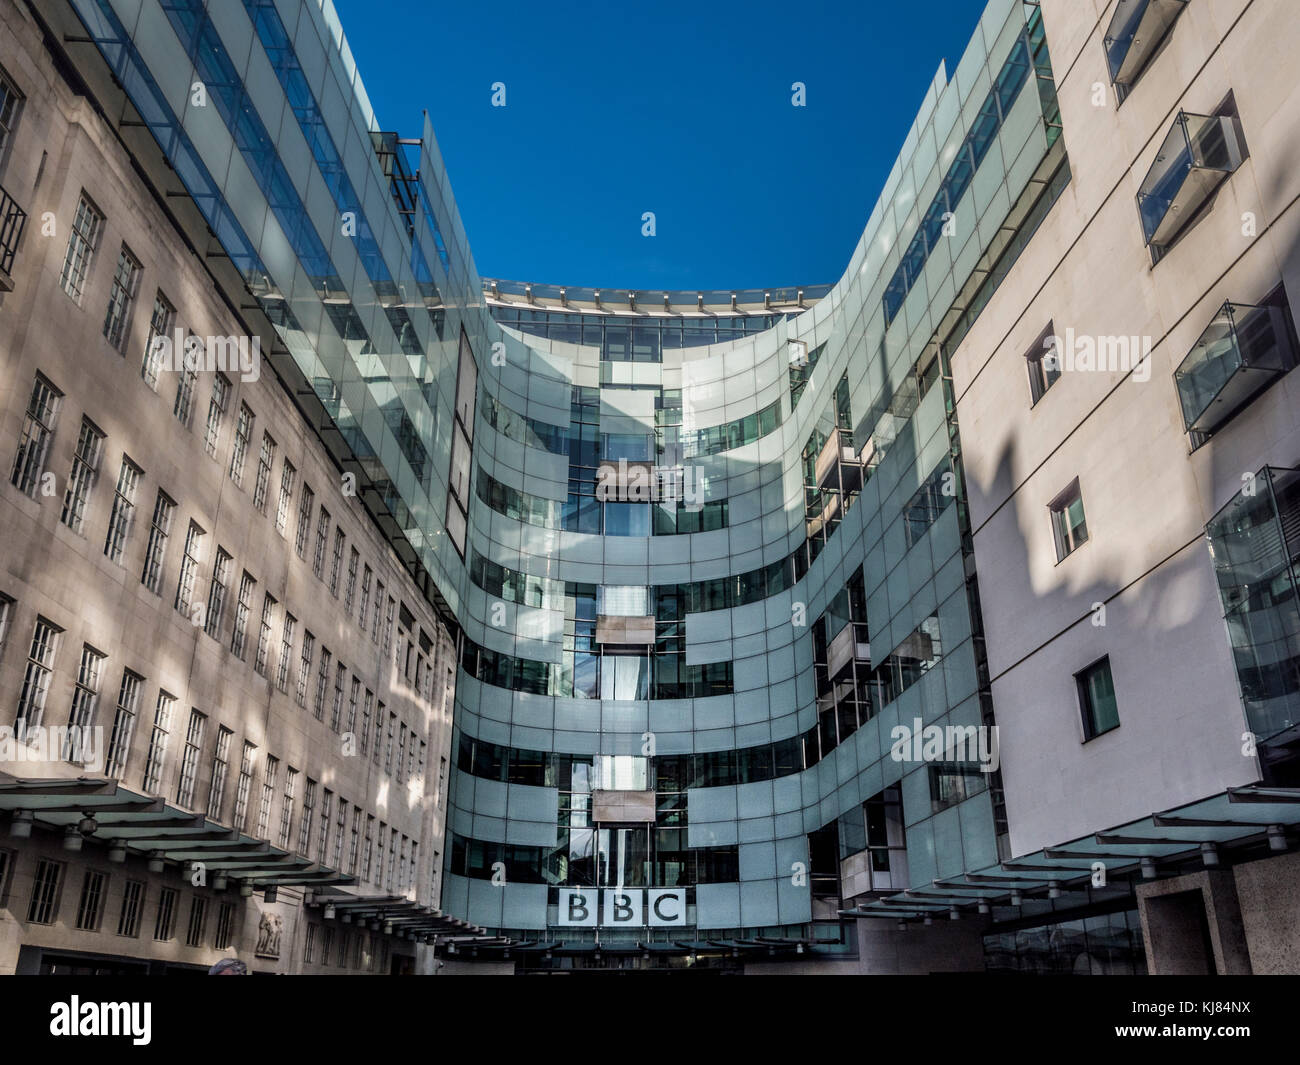 La sede de la BBC, un renovado edificio de piedra de Portland con estudios de vanguardia y una plaza pública. Portland Place, Londres, Reino Unido. Foto de stock